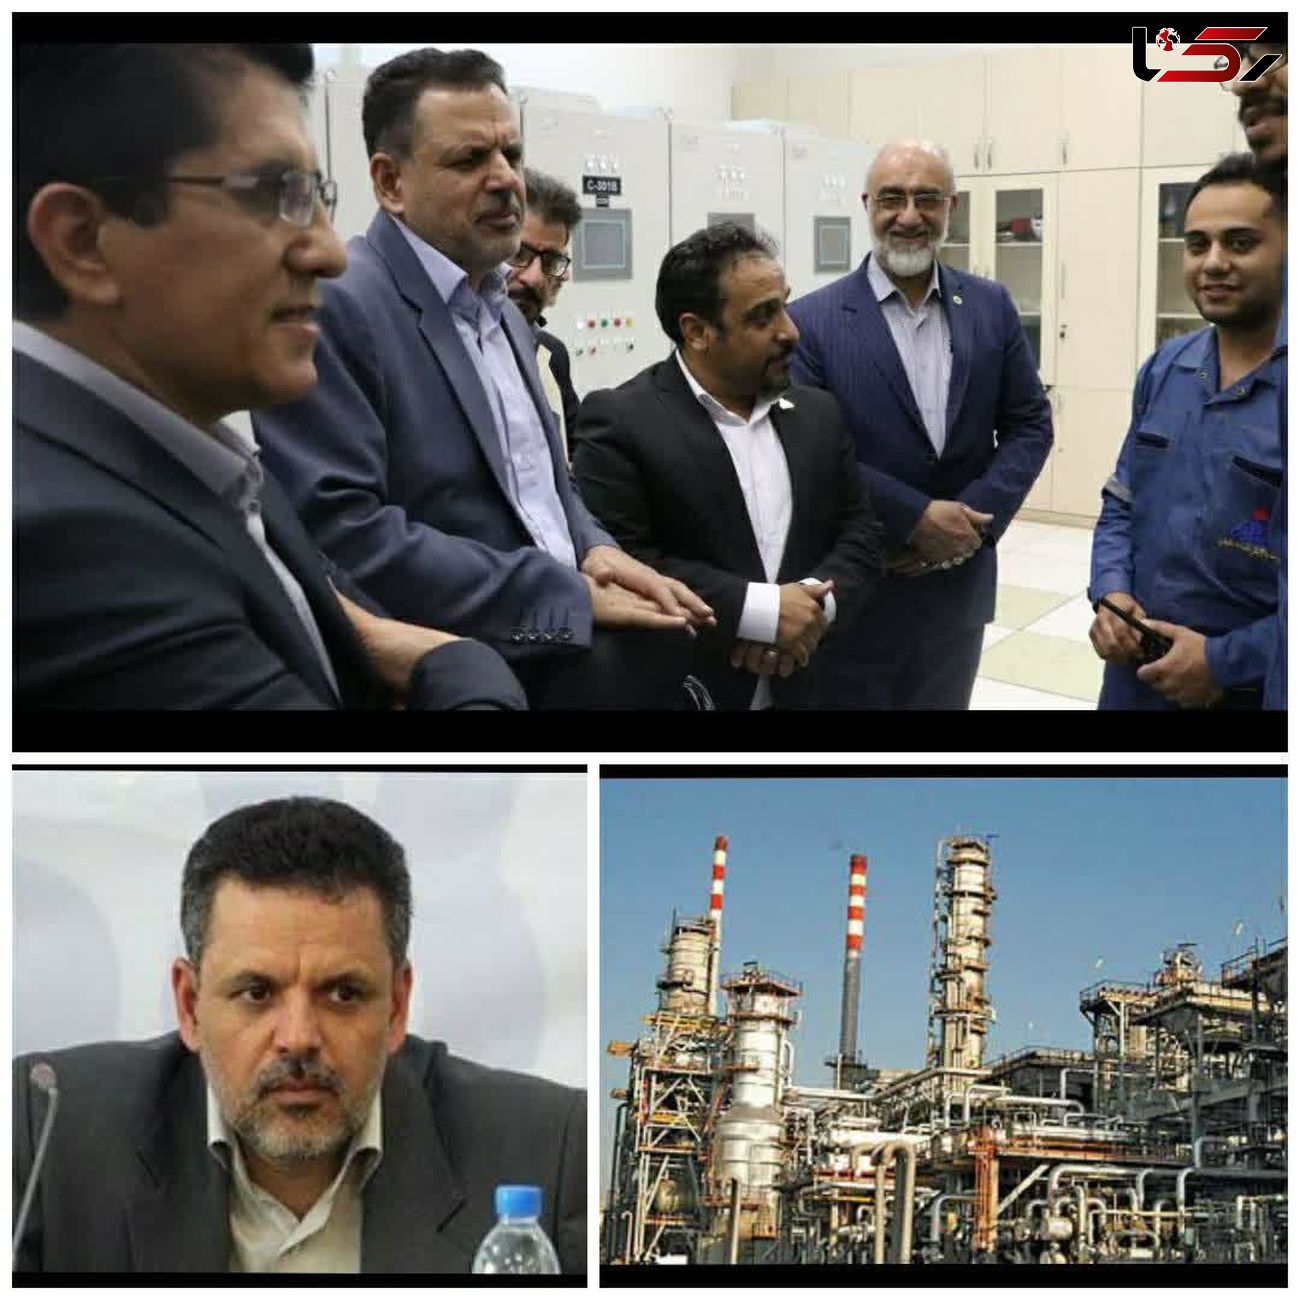 پالایشگاه اصفهان سرآمد شرکت های پالایشی است / تولید روزانه 100 هزار بشکه گازوئیل و سوخت پاک